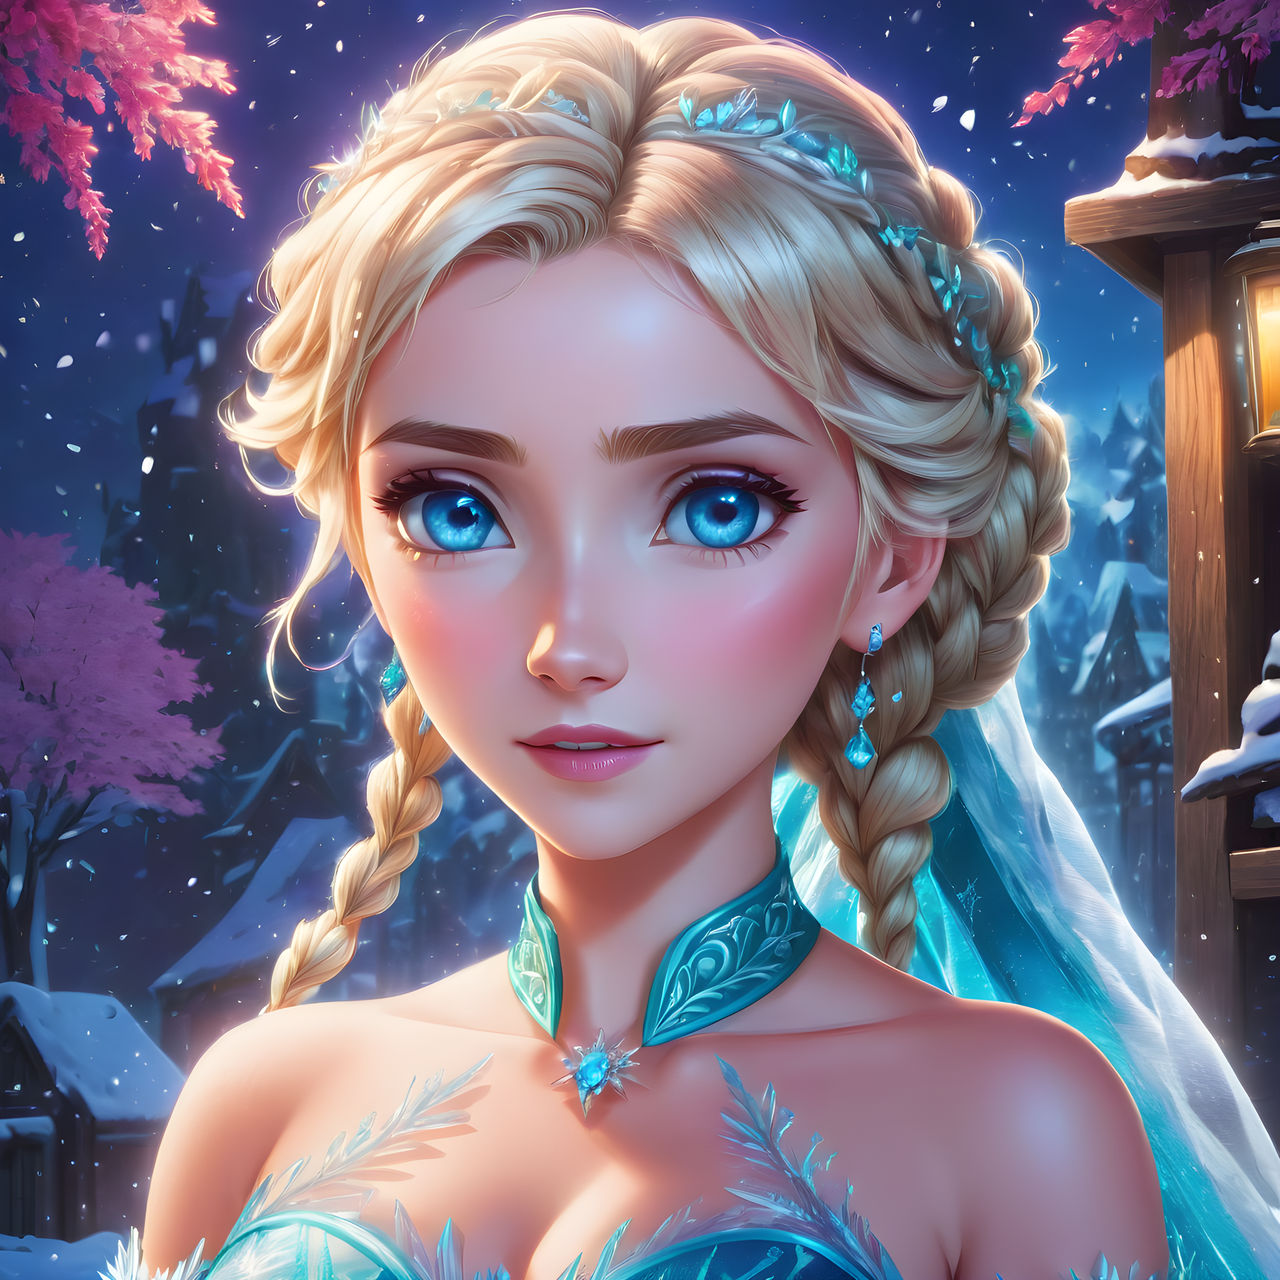 Frozen - Elsa by AlphaBlade13579 on DeviantArt